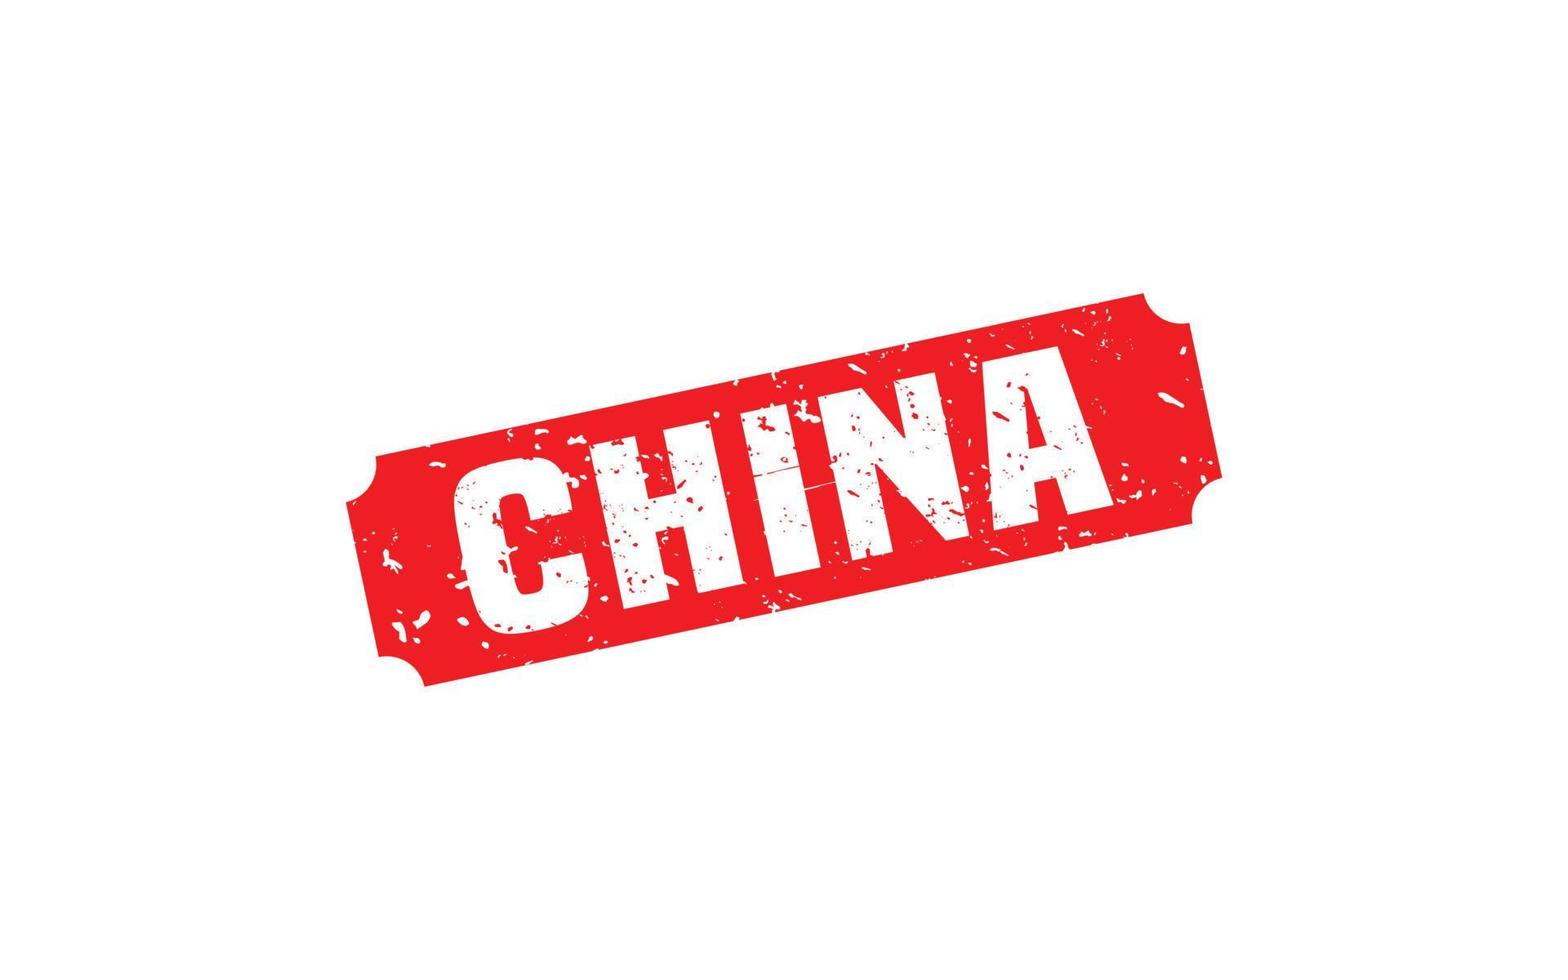 goma de sello china con estilo grunge sobre fondo blanco vector